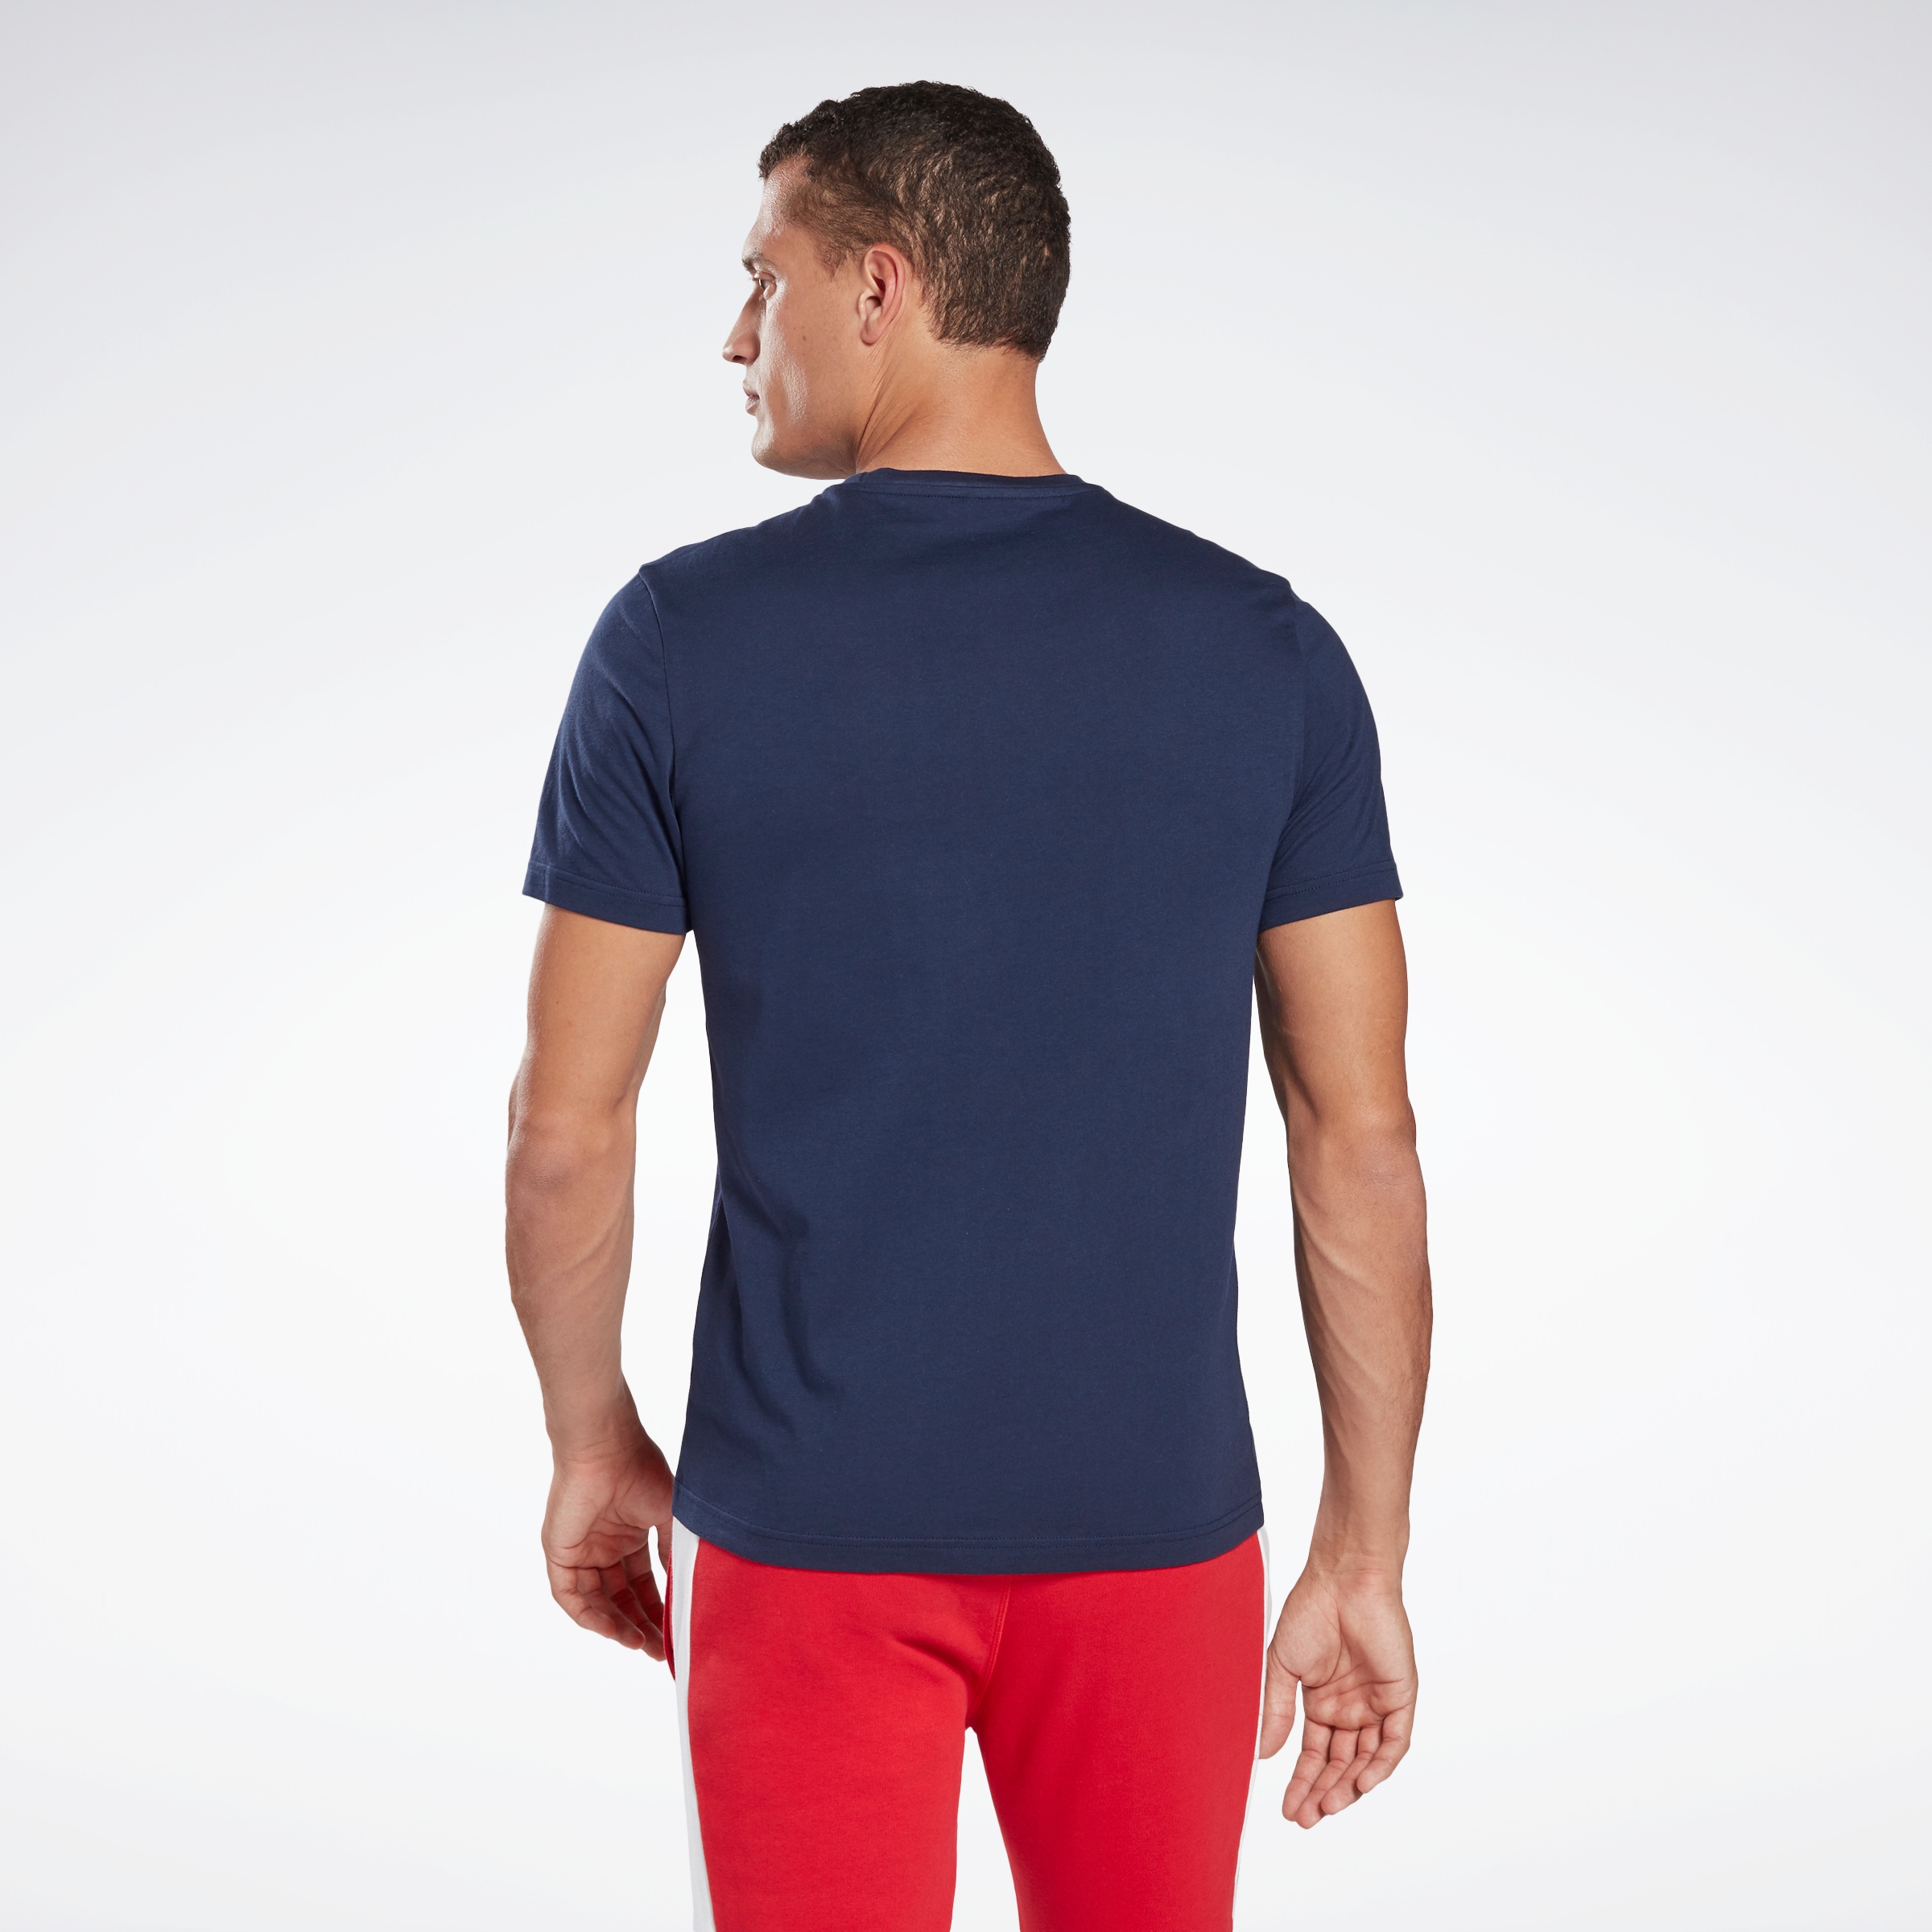 Reebok T-Shirt "GRAPHIC SERIES LINEAR LOGO" günstig online kaufen